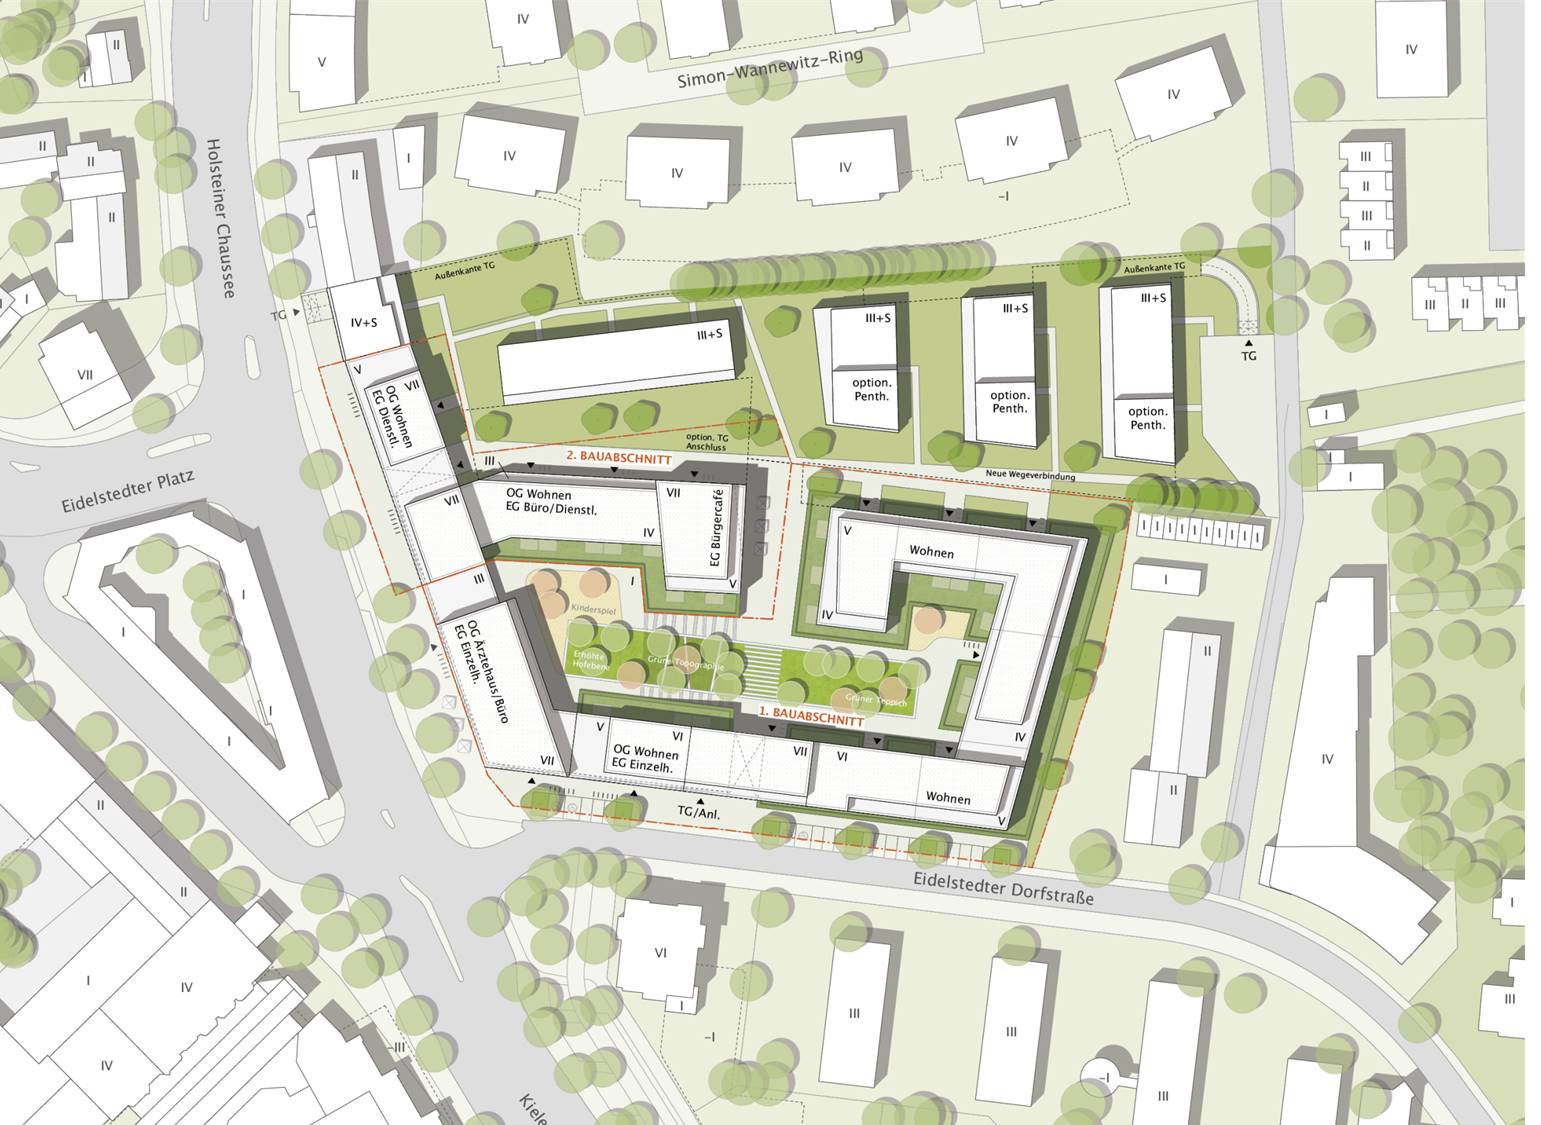 Lageplan neues Quartier am Eidelstedter Platz